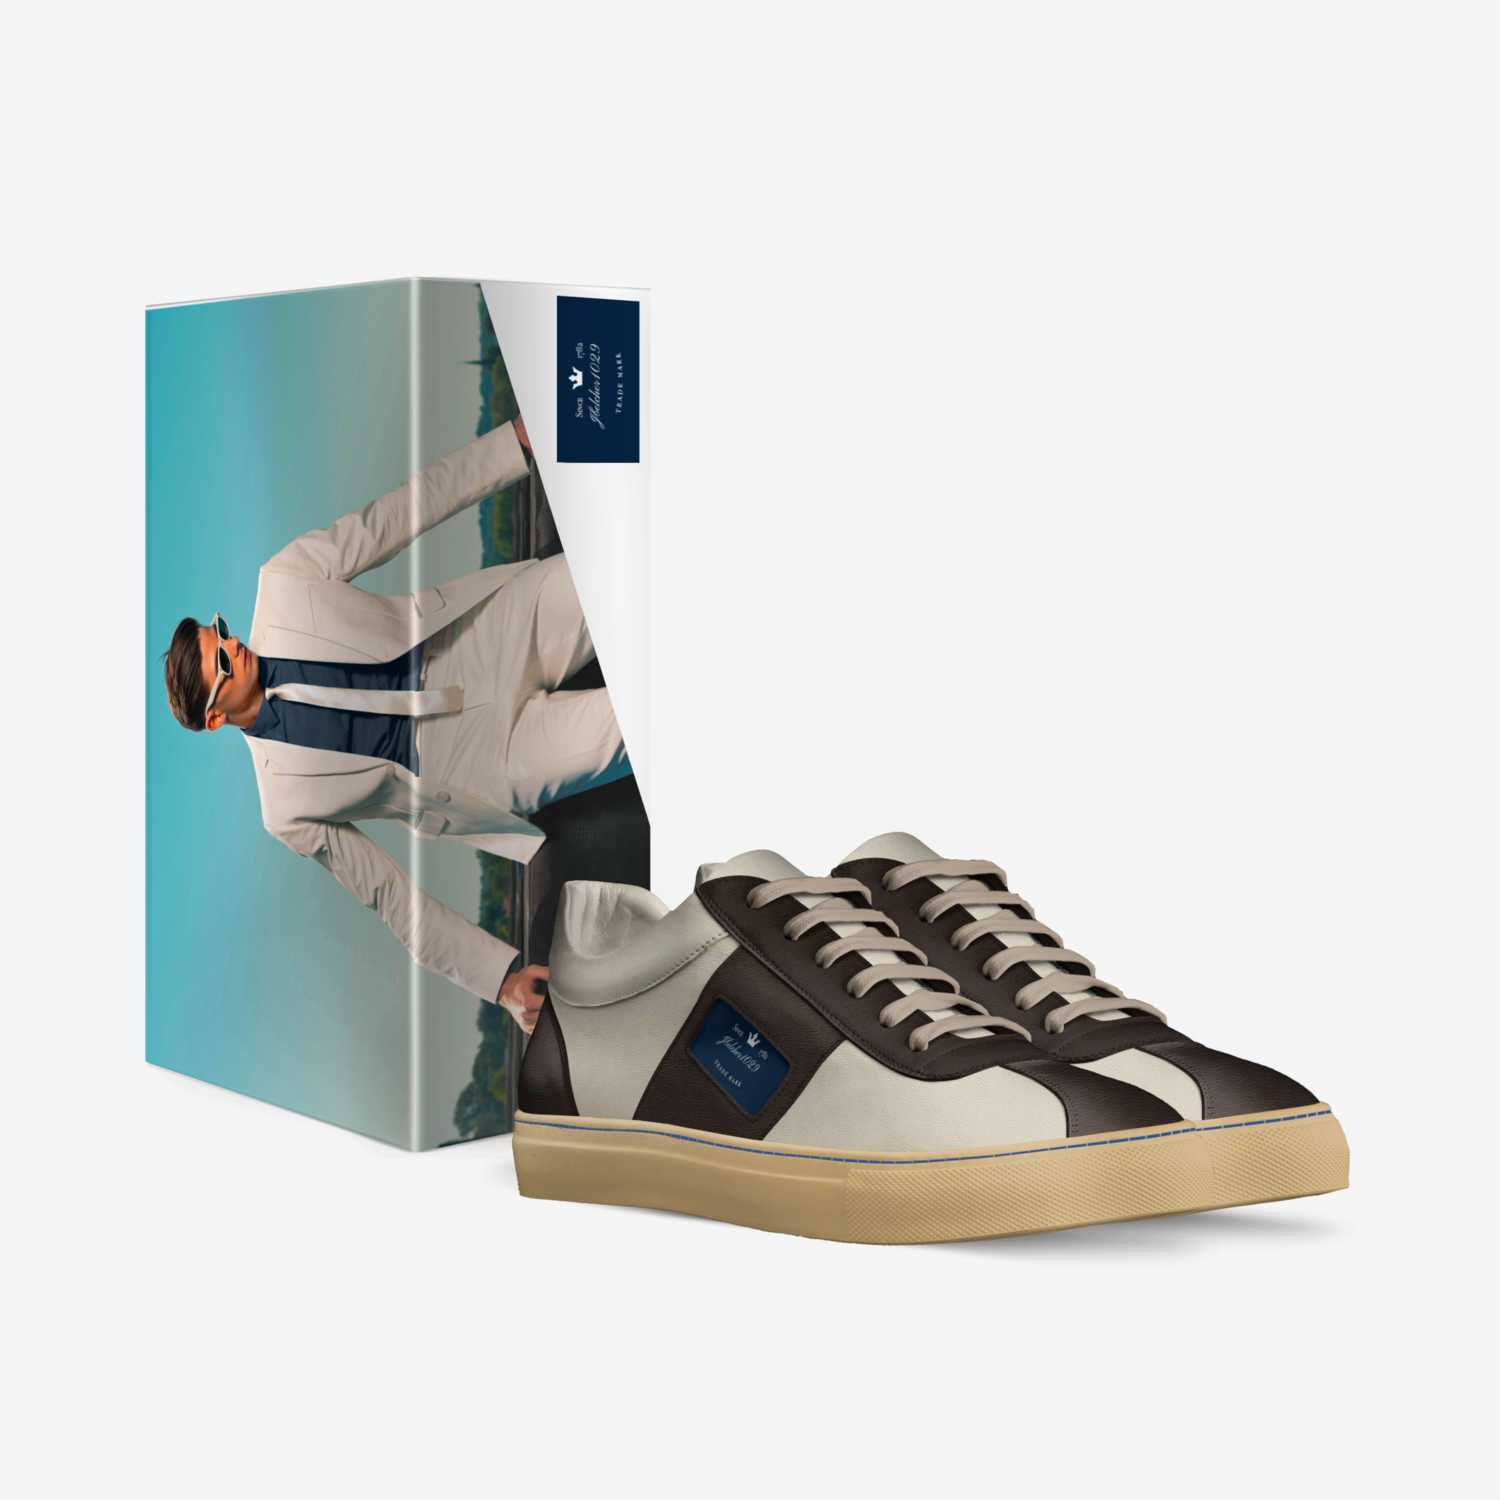 Jbelcher1029  custom made in Italy shoes by Jordan Belcher | Box view